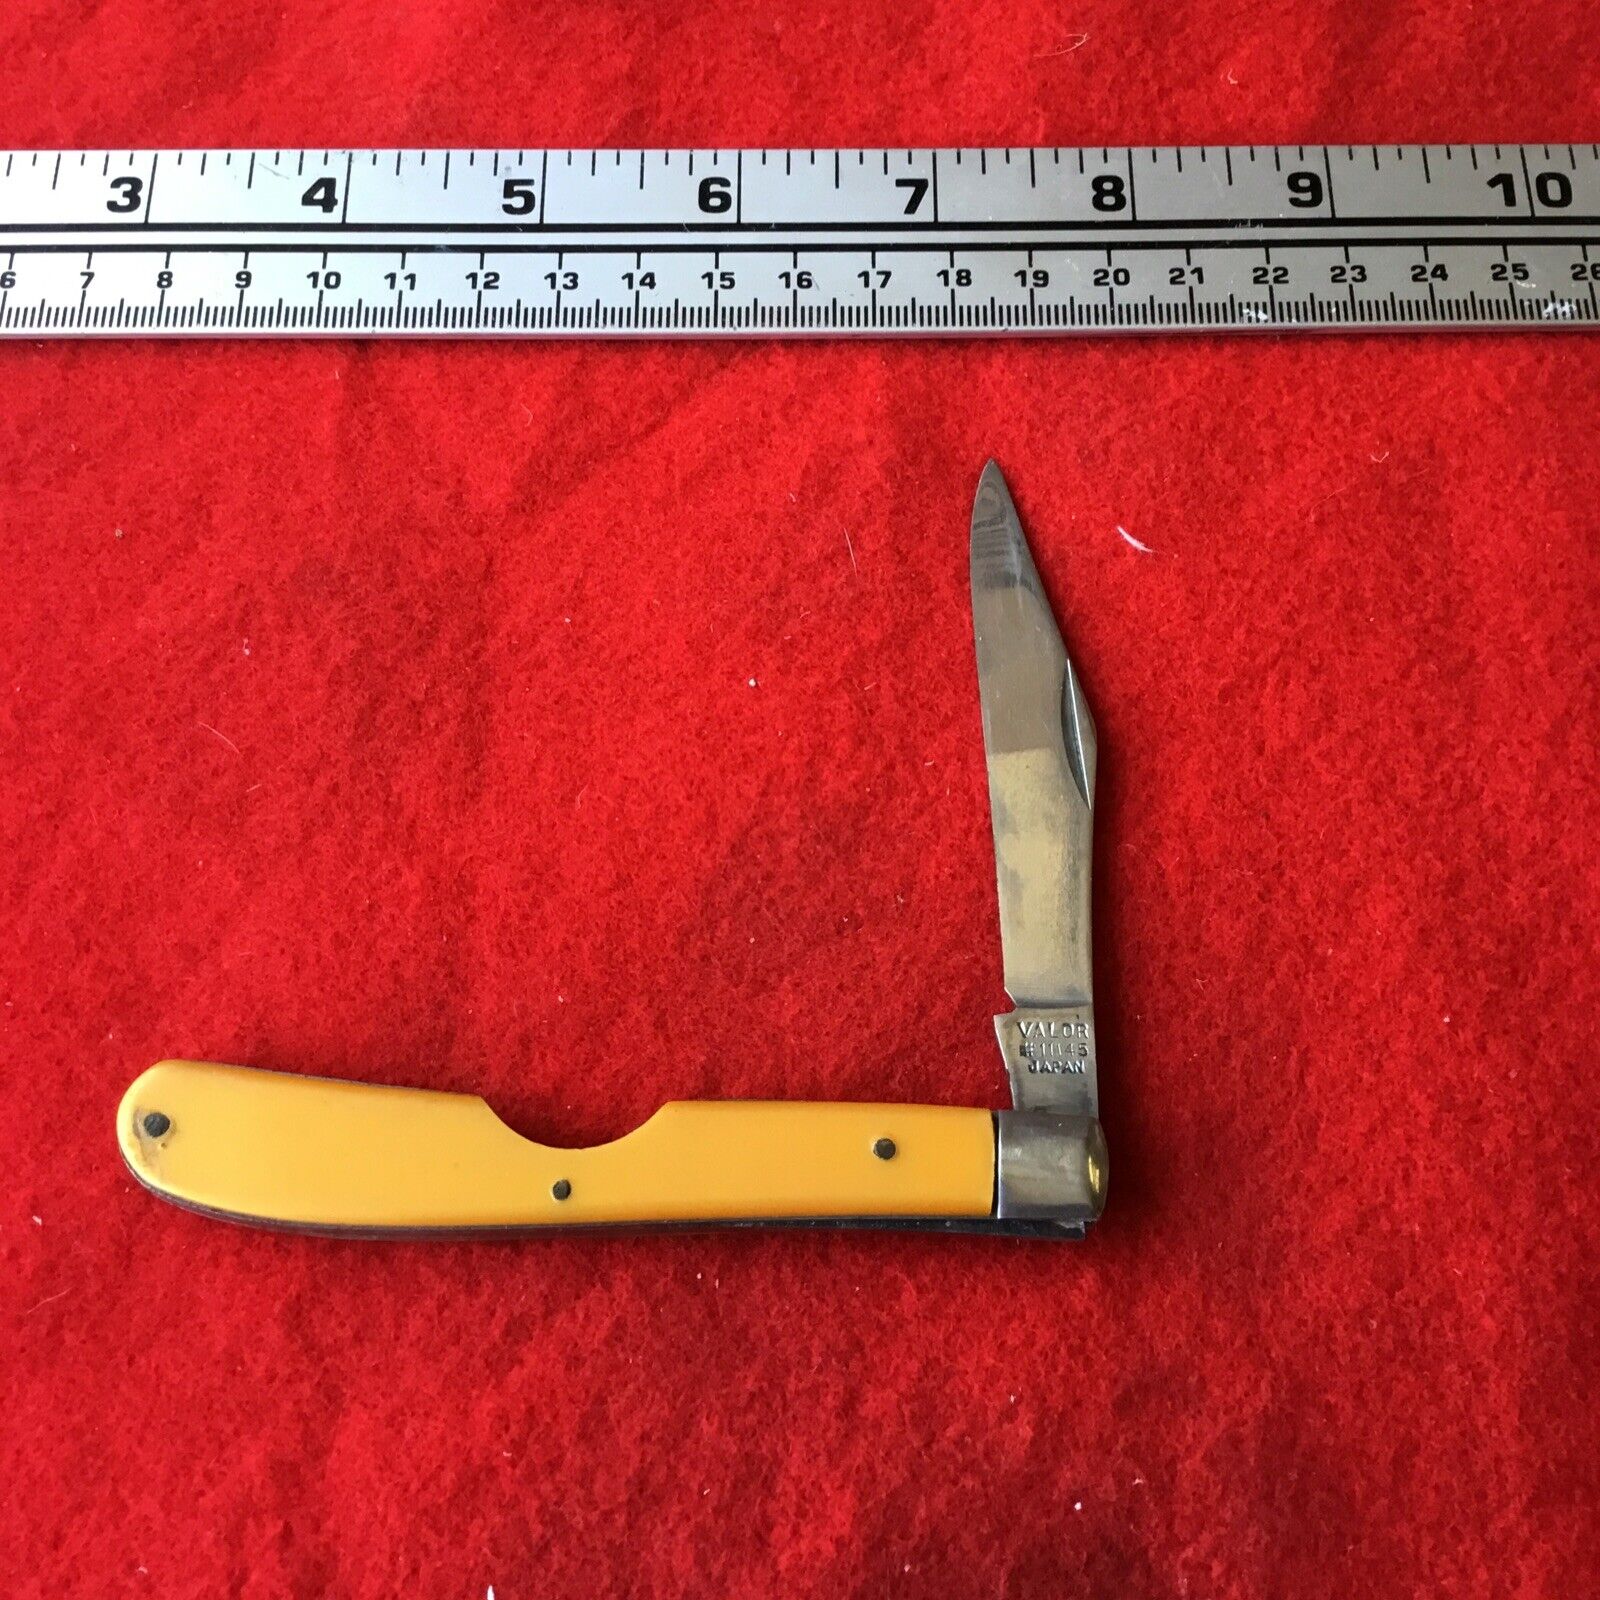 Vtg VALOR 11145 Easy Open Slimline Trapper Knife yellow sharp good snap